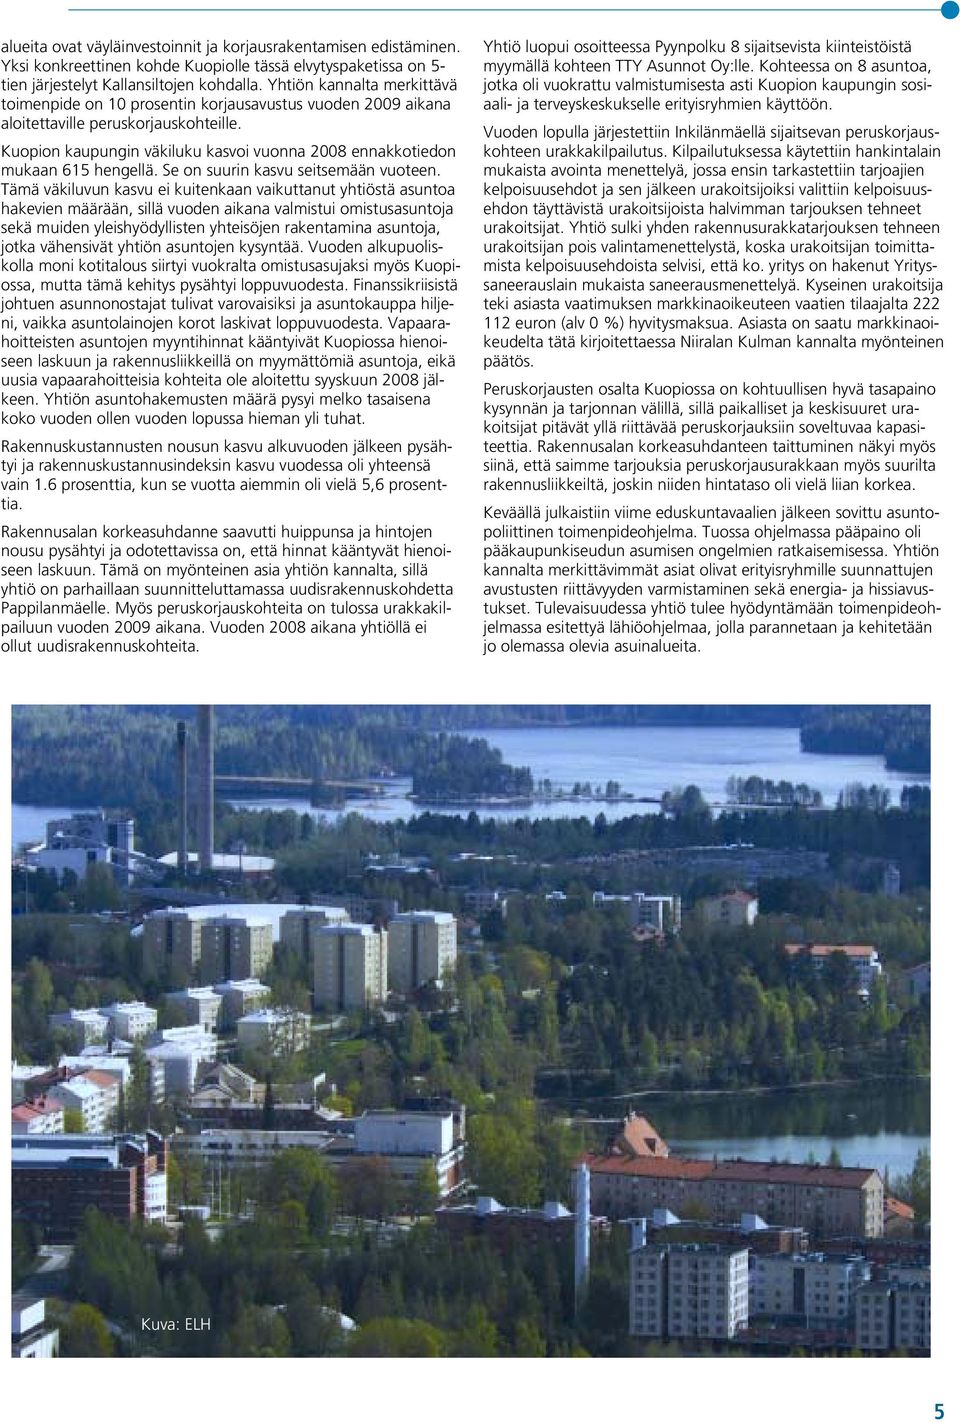 Kuopion kaupungin väkiluku kasvoi vuonna 2008 ennakkotiedon mukaan 615 hengellä. Se on suurin kasvu seitsemään vuoteen.